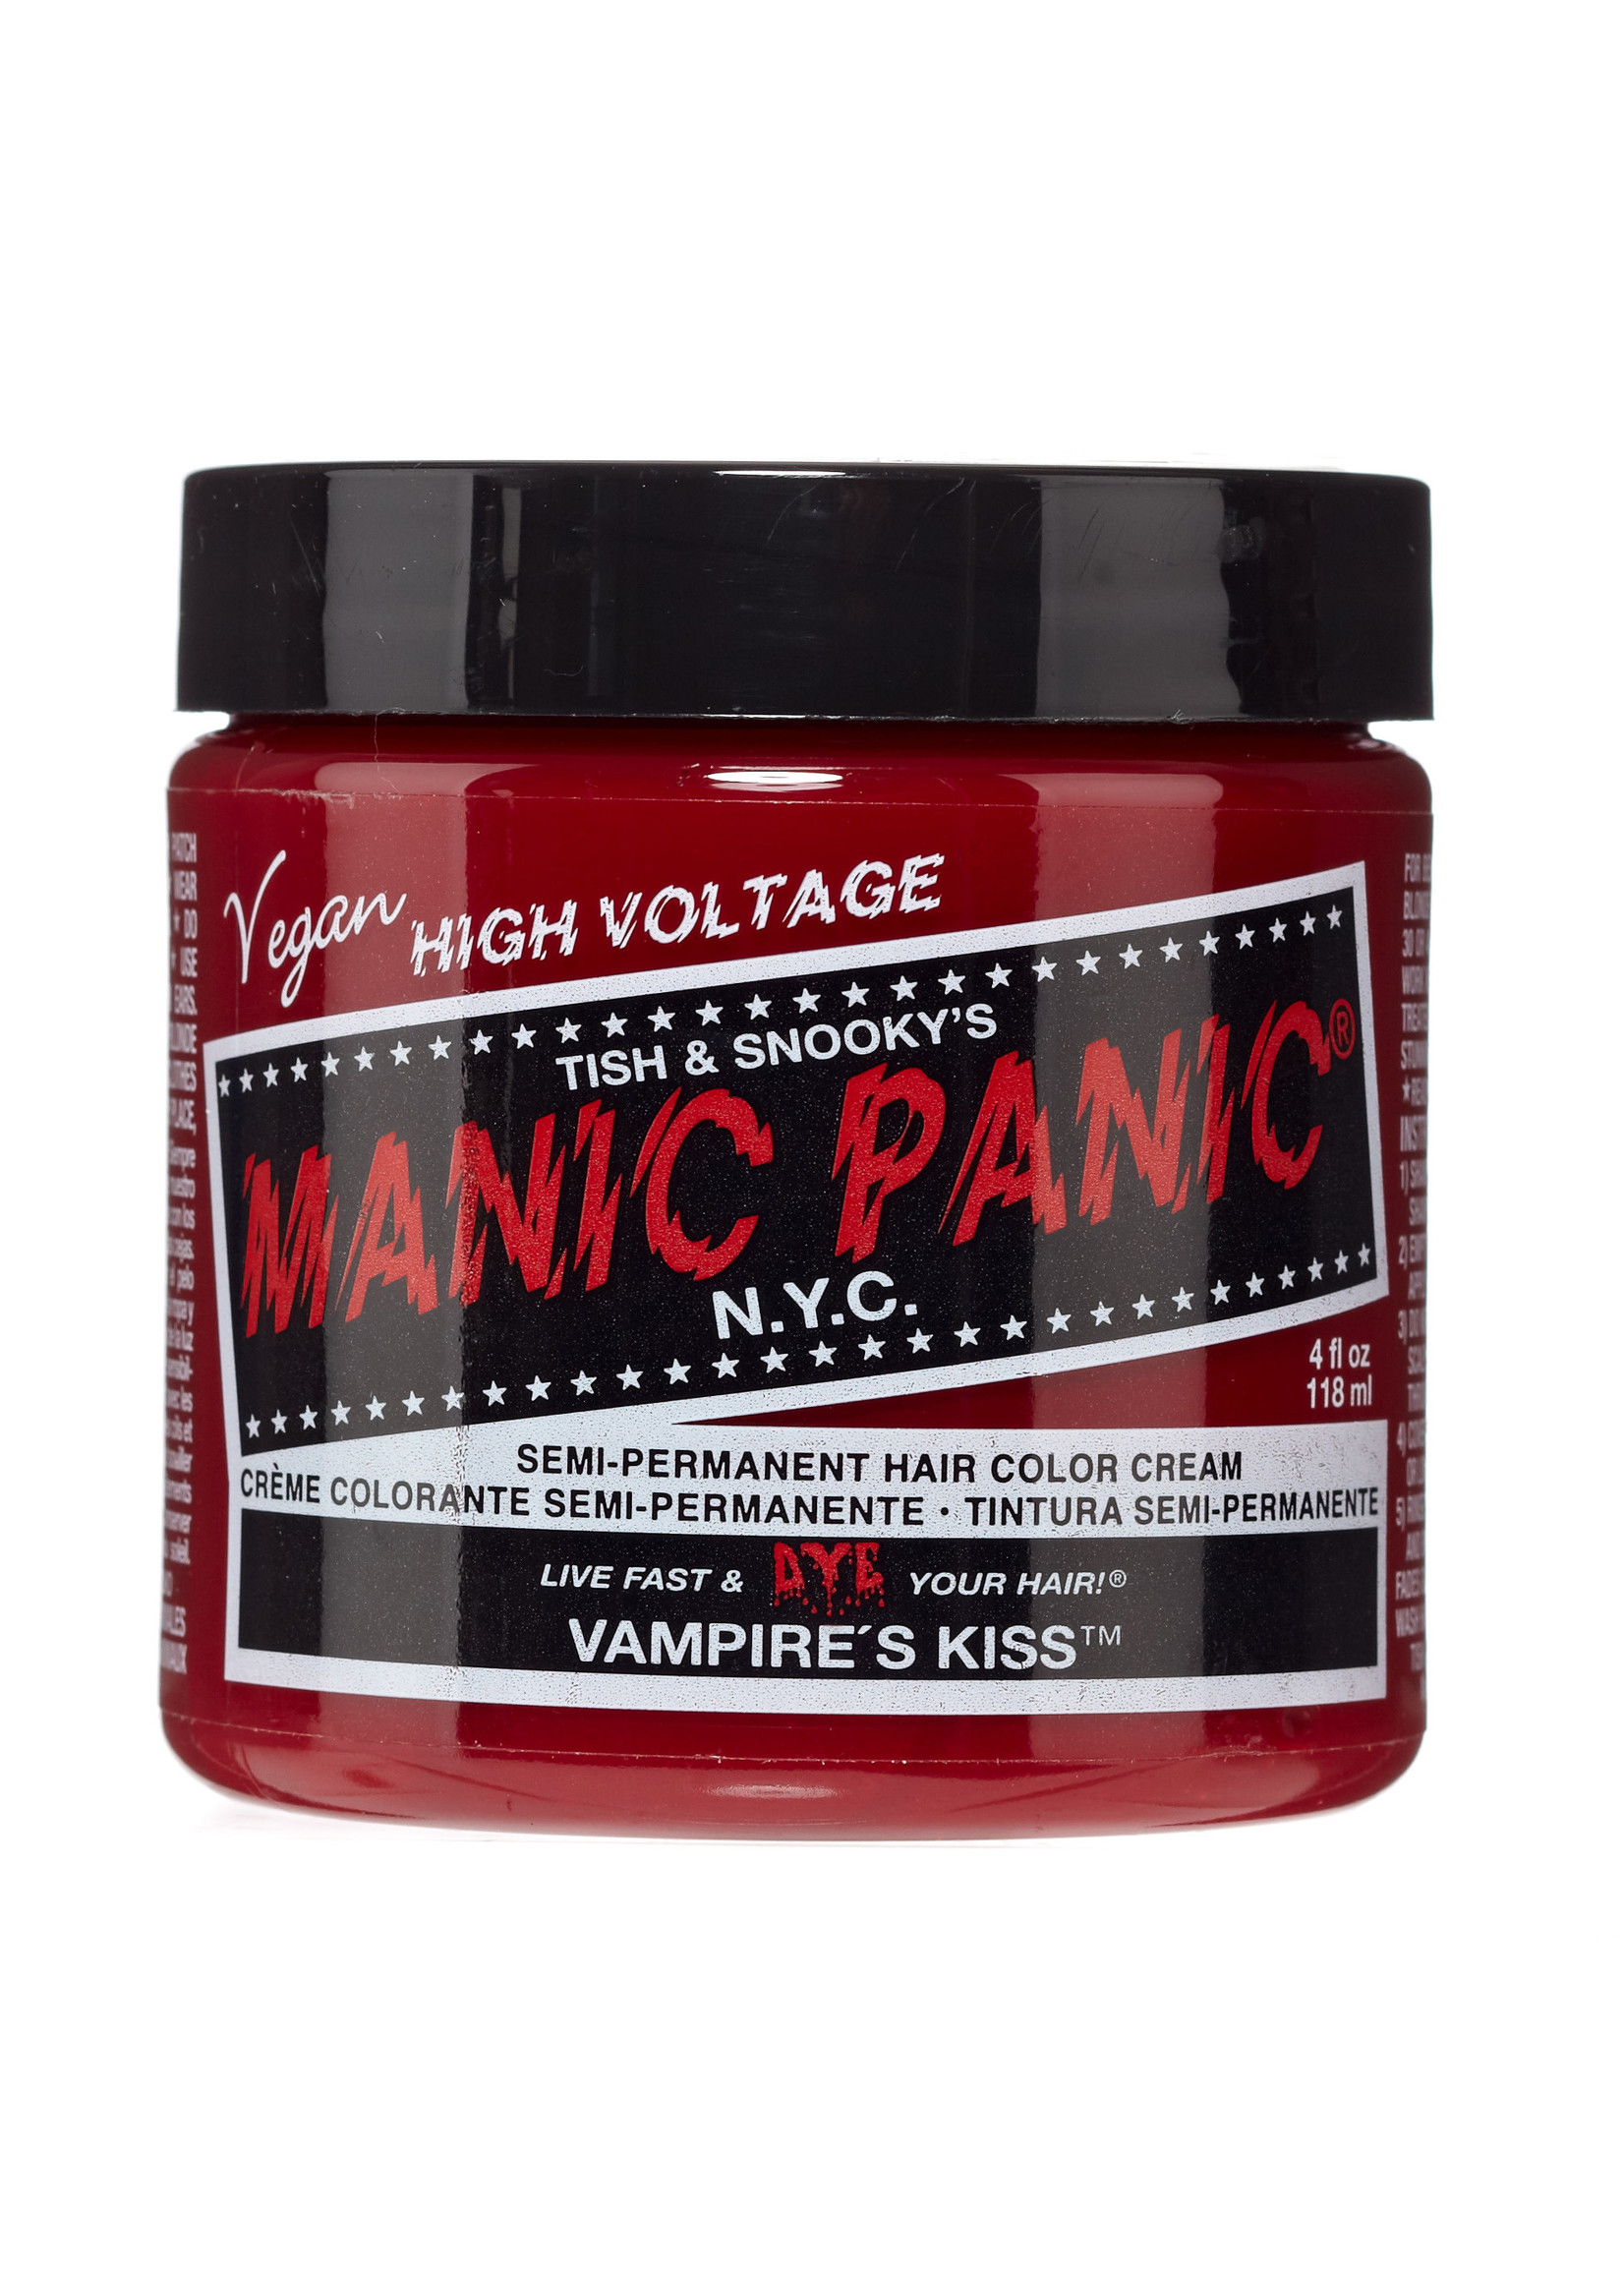 Manic Panic Manic Panic Classic Cream Vampire's Kiss 118mL